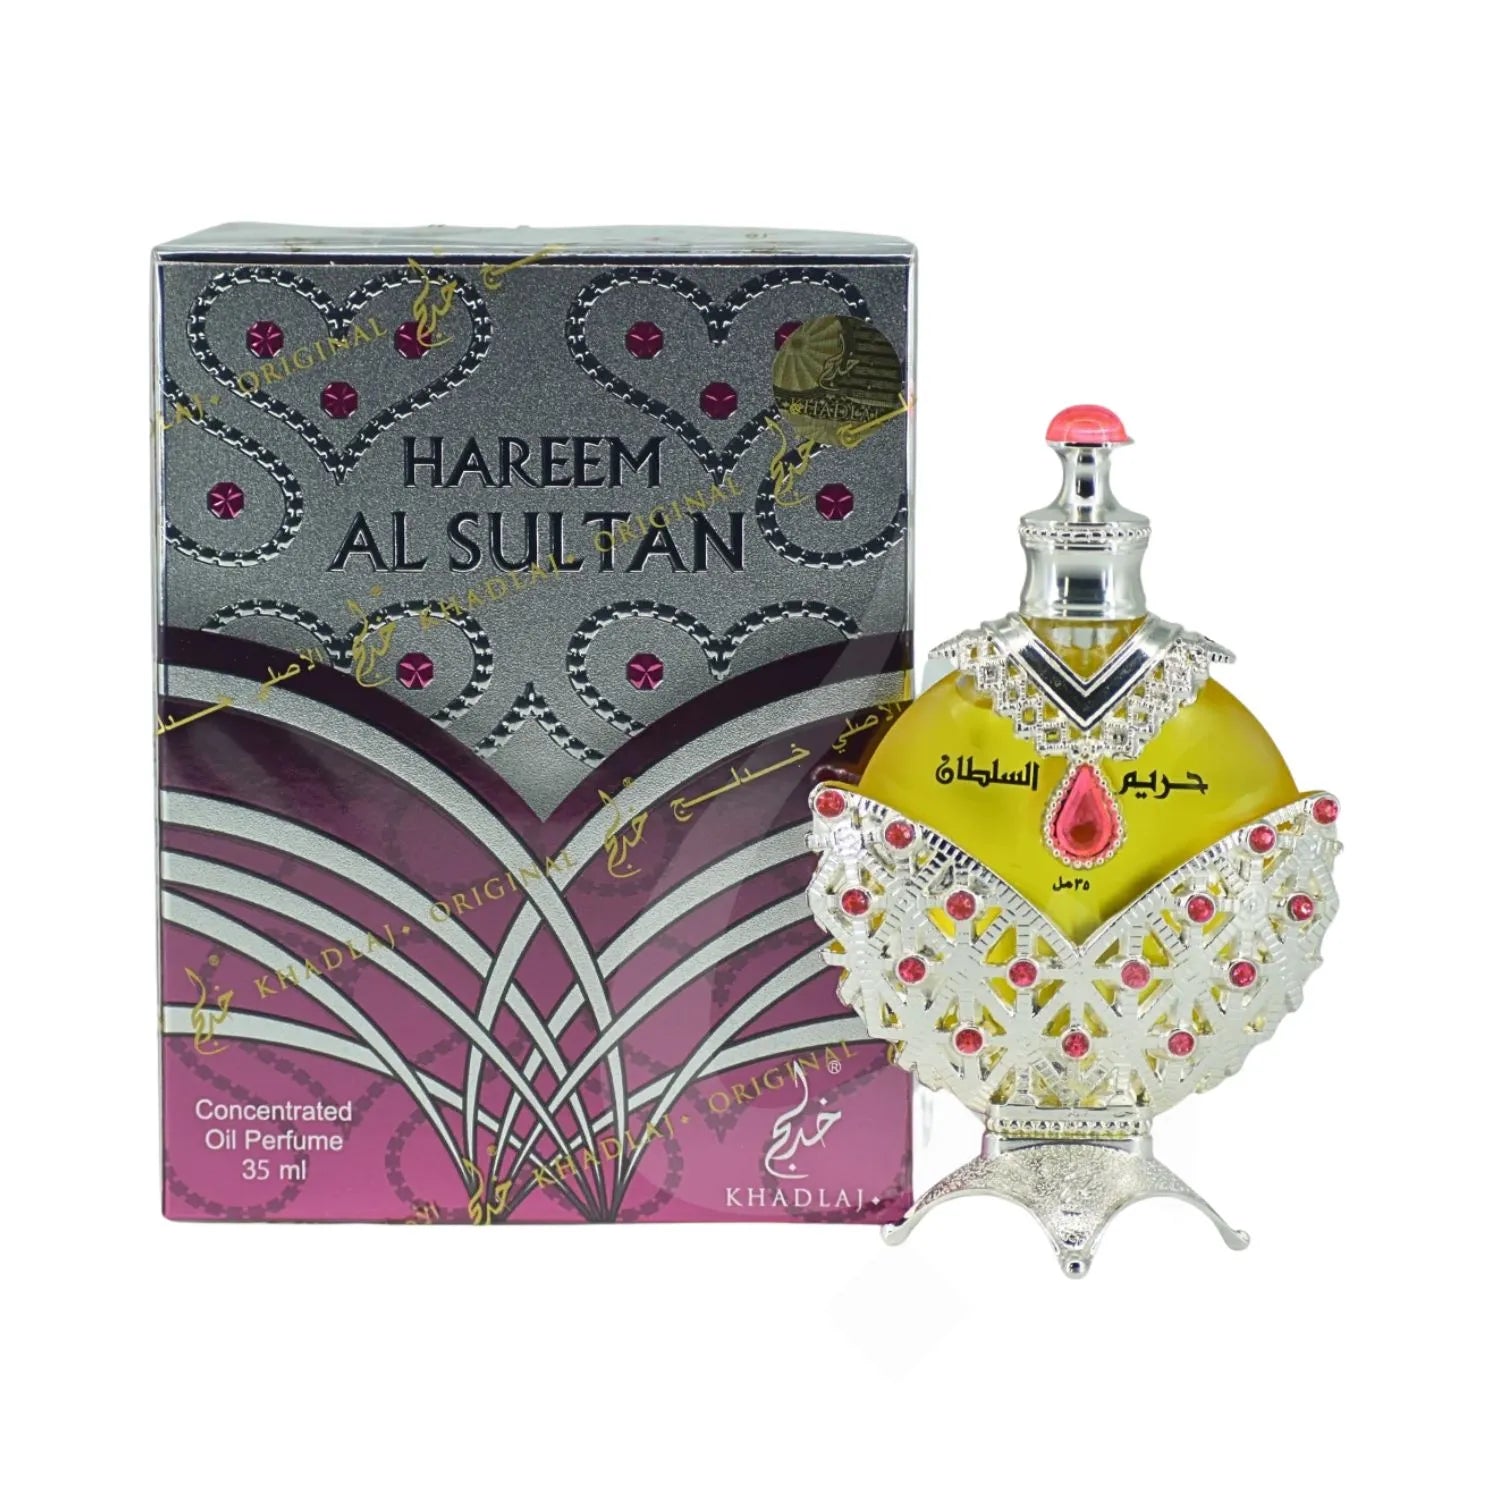 Hareem Al Sultan Silver Perfume Oil Box